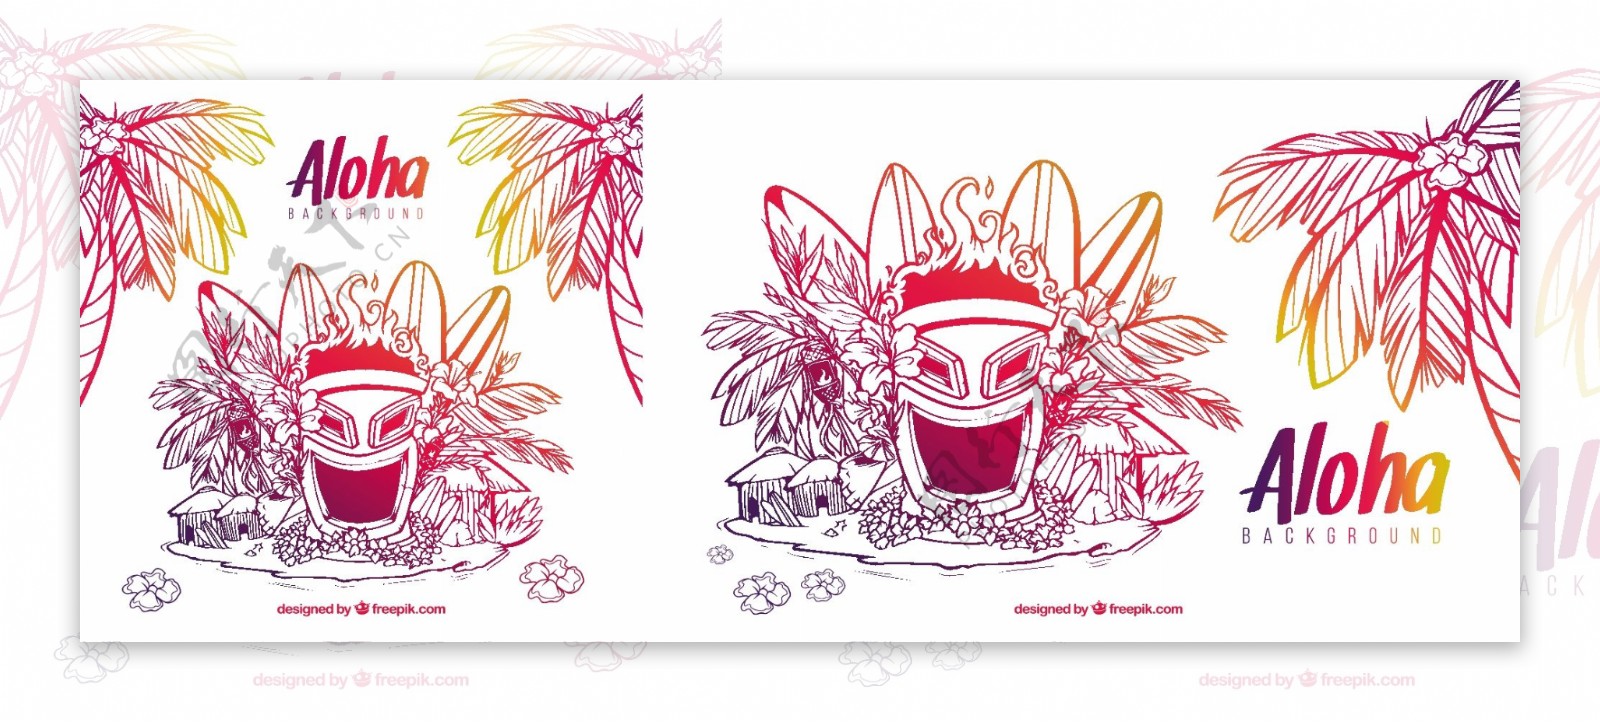 面具草图和夏威夷元素背景